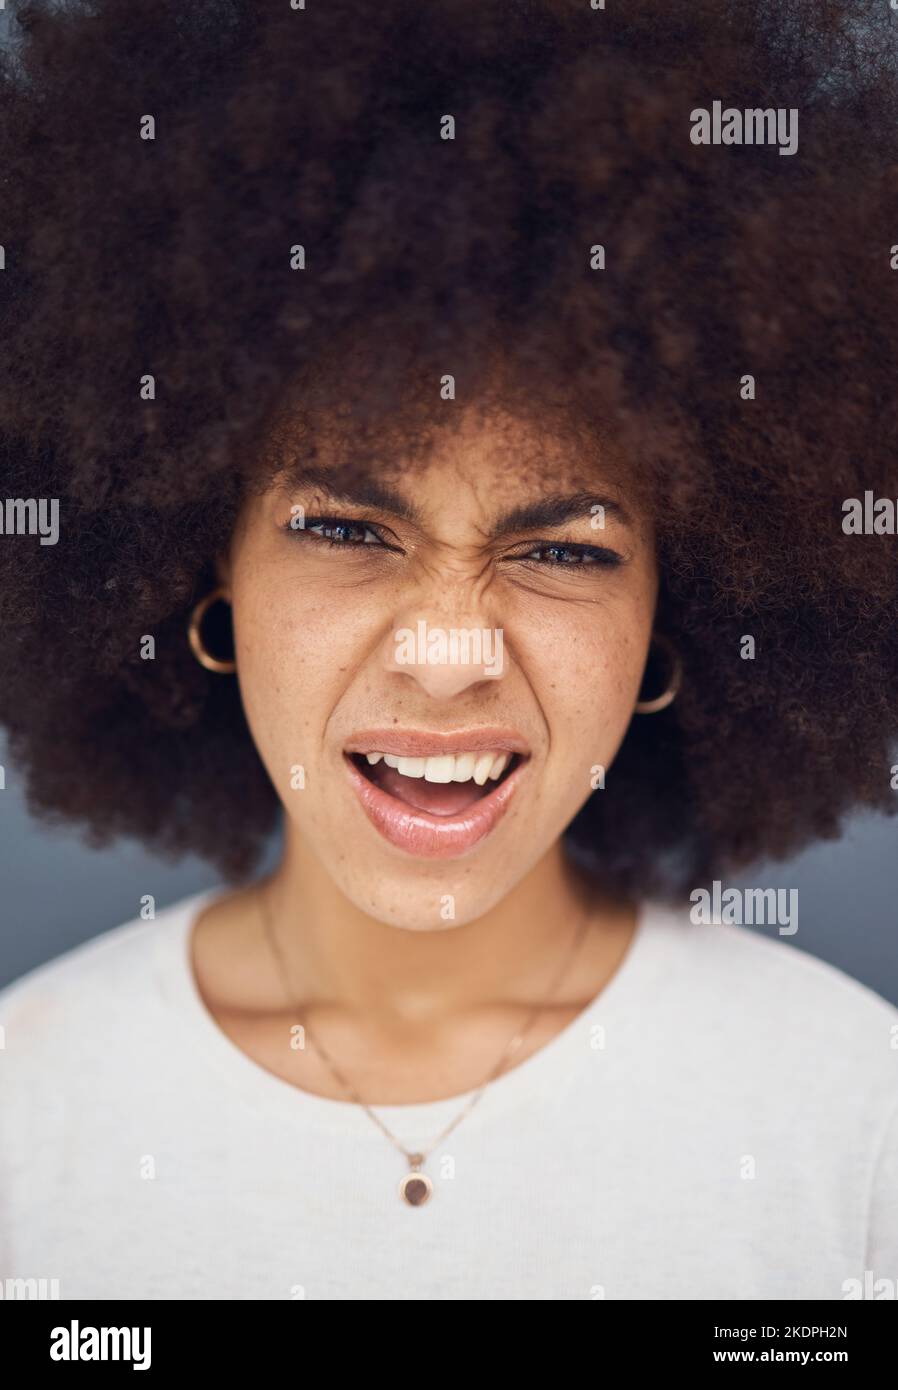 Confus, afro et visage d'une femme pensant à une décision contre un fond gris de studio. Doute, incertain et tête de portrait d'une jeune fille à la recherche Banque D'Images